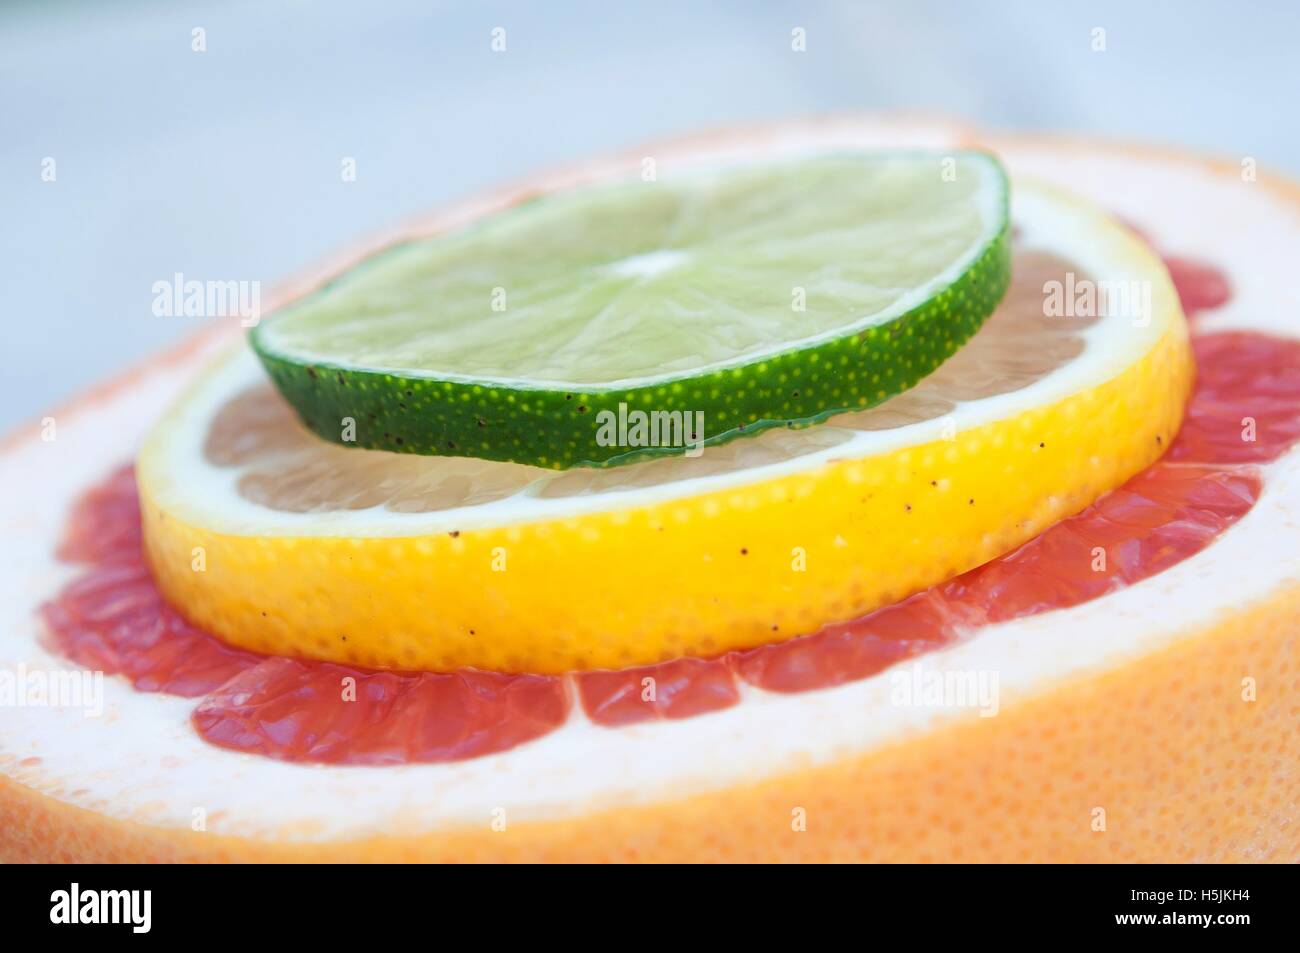 Frische bunte tropische Früchte Scheiben - Zitrone, Limette, rote grapefruit Stockfoto